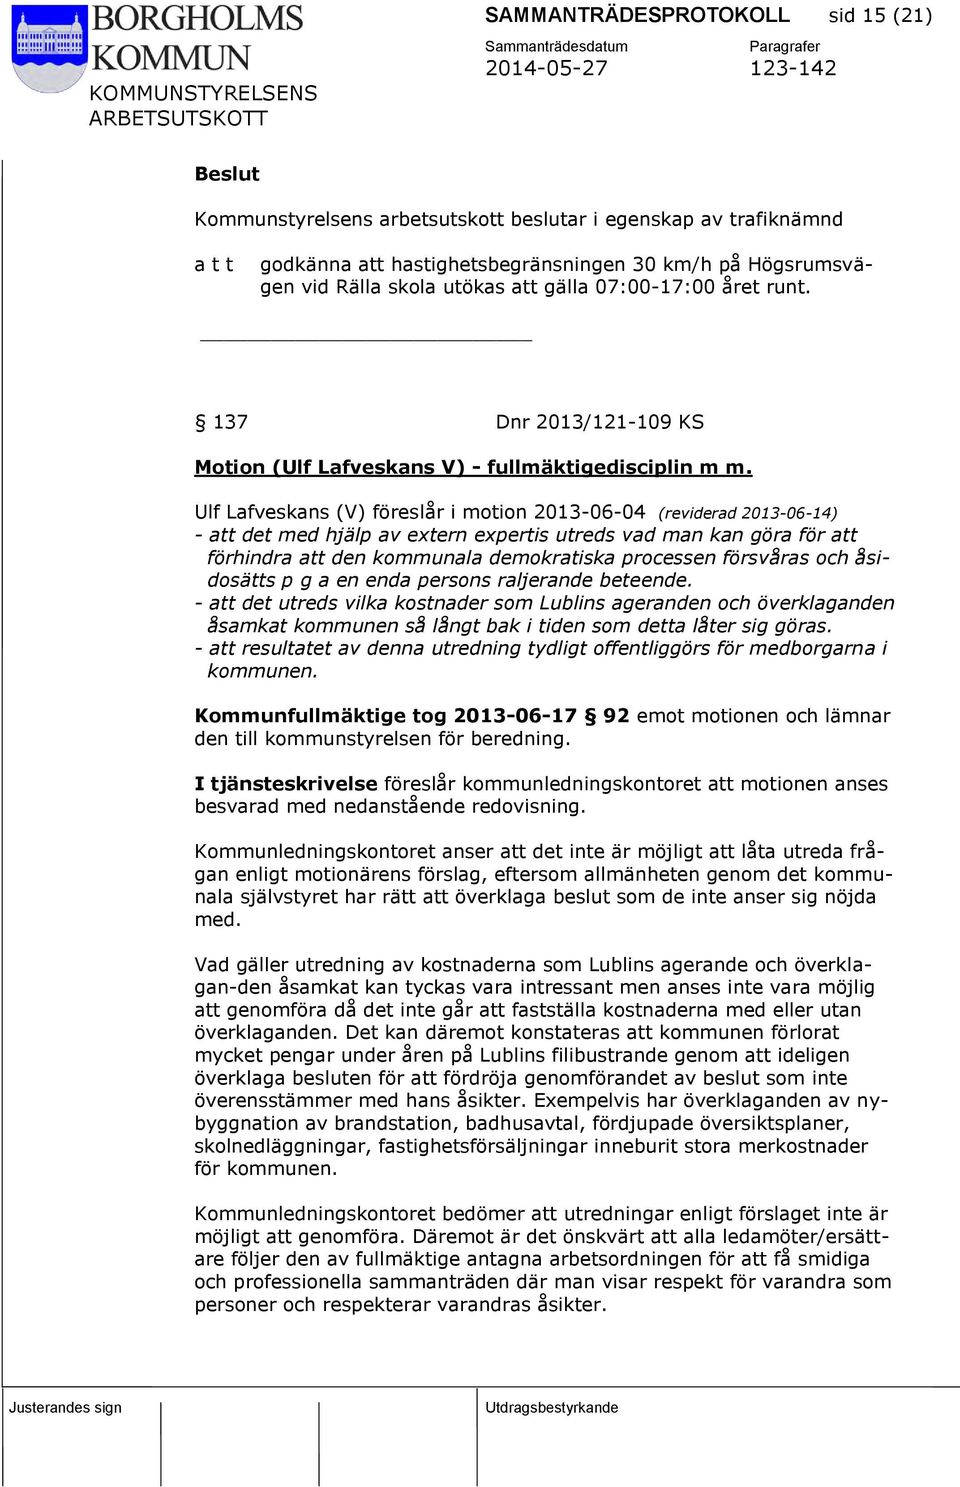 Ulf Lafveskans (V) föreslår i motion 2013-06-04 (reviderad 2013-06-14) - att det med hjälp av extern expertis utreds vad man kan göra för att förhindra att den kommunala demokratiska processen